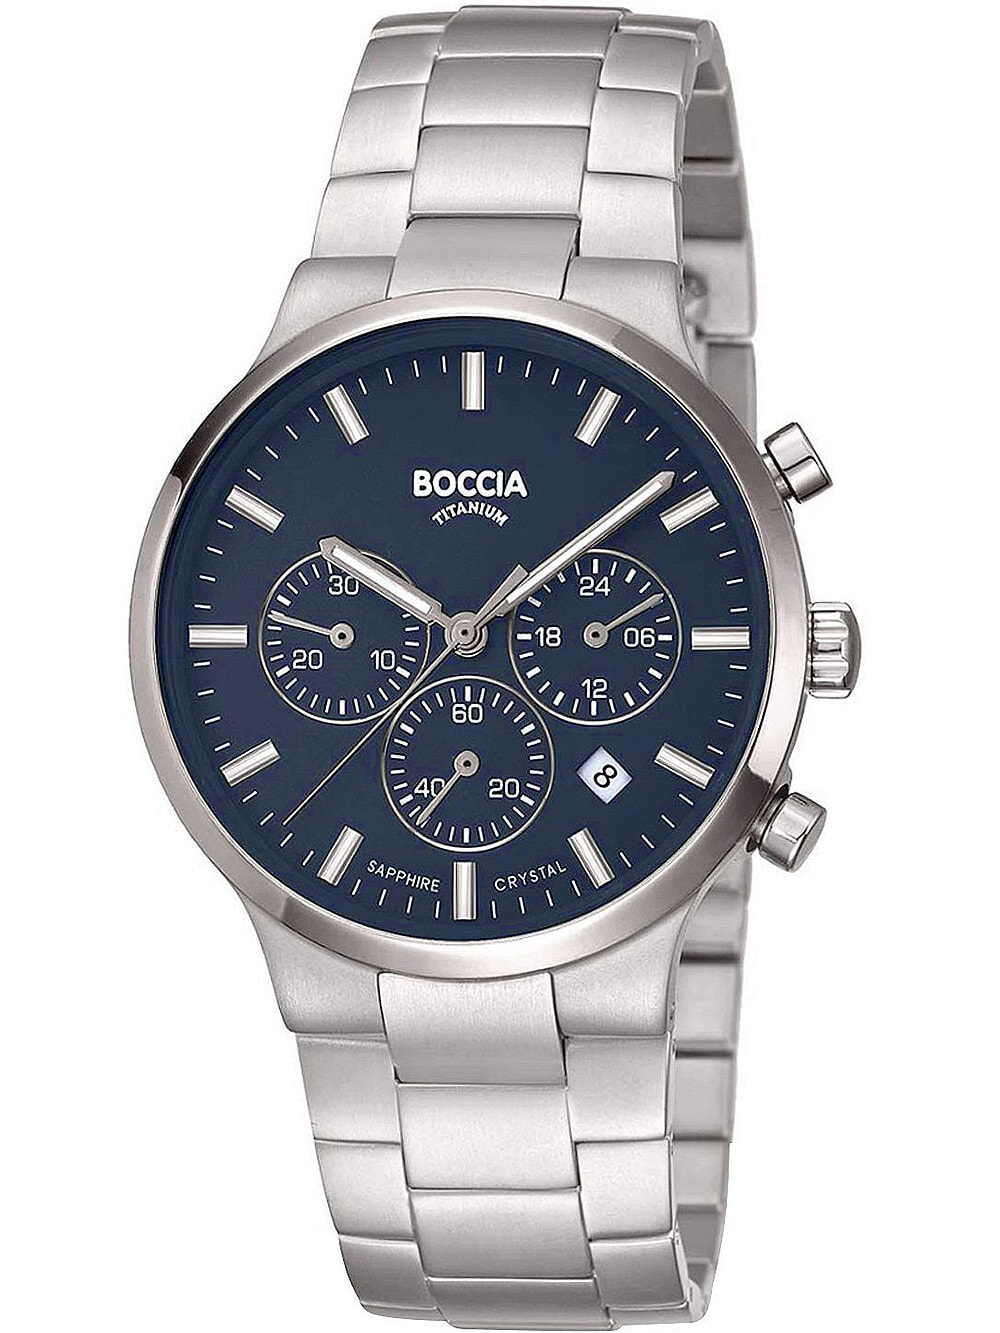 Мужские наручные часы с серебряным браслетом Boccia 3746-02 mens watch chronograph titanium 39mm 5ATM